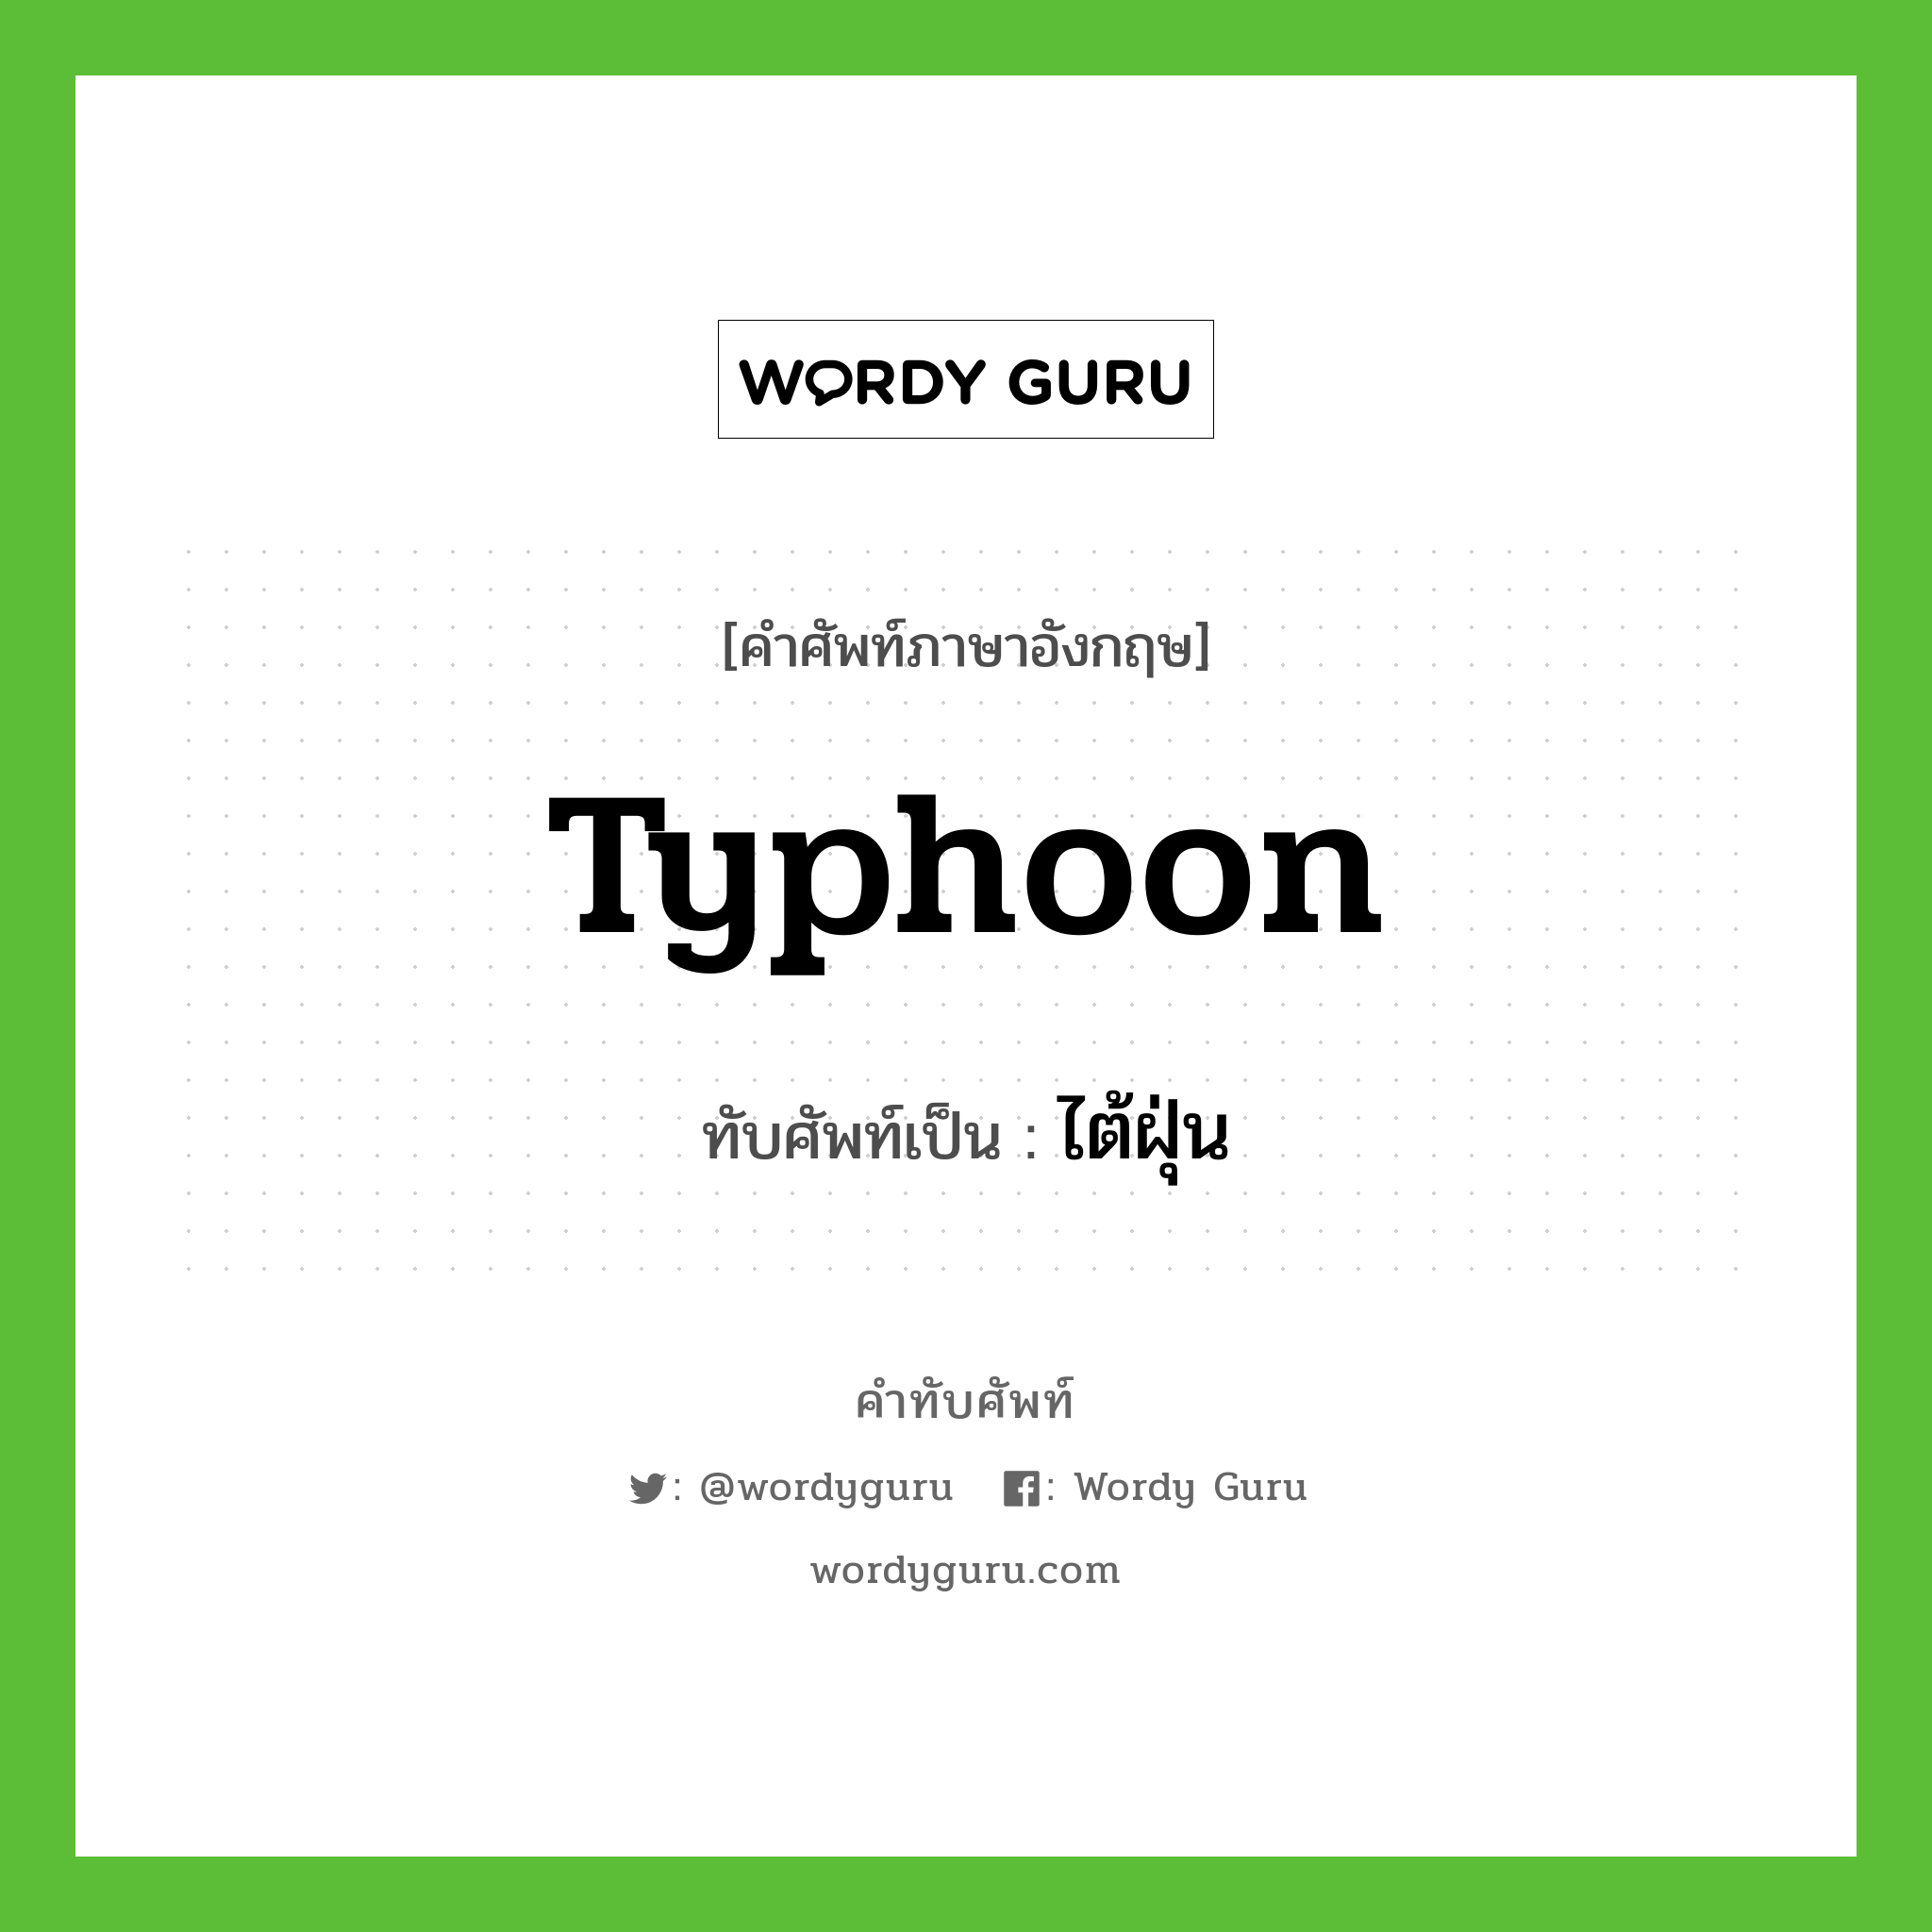 typhoon เขียนเป็นคำไทยว่าอะไร?, คำศัพท์ภาษาอังกฤษ typhoon ทับศัพท์เป็น ไต้ฝุ่น